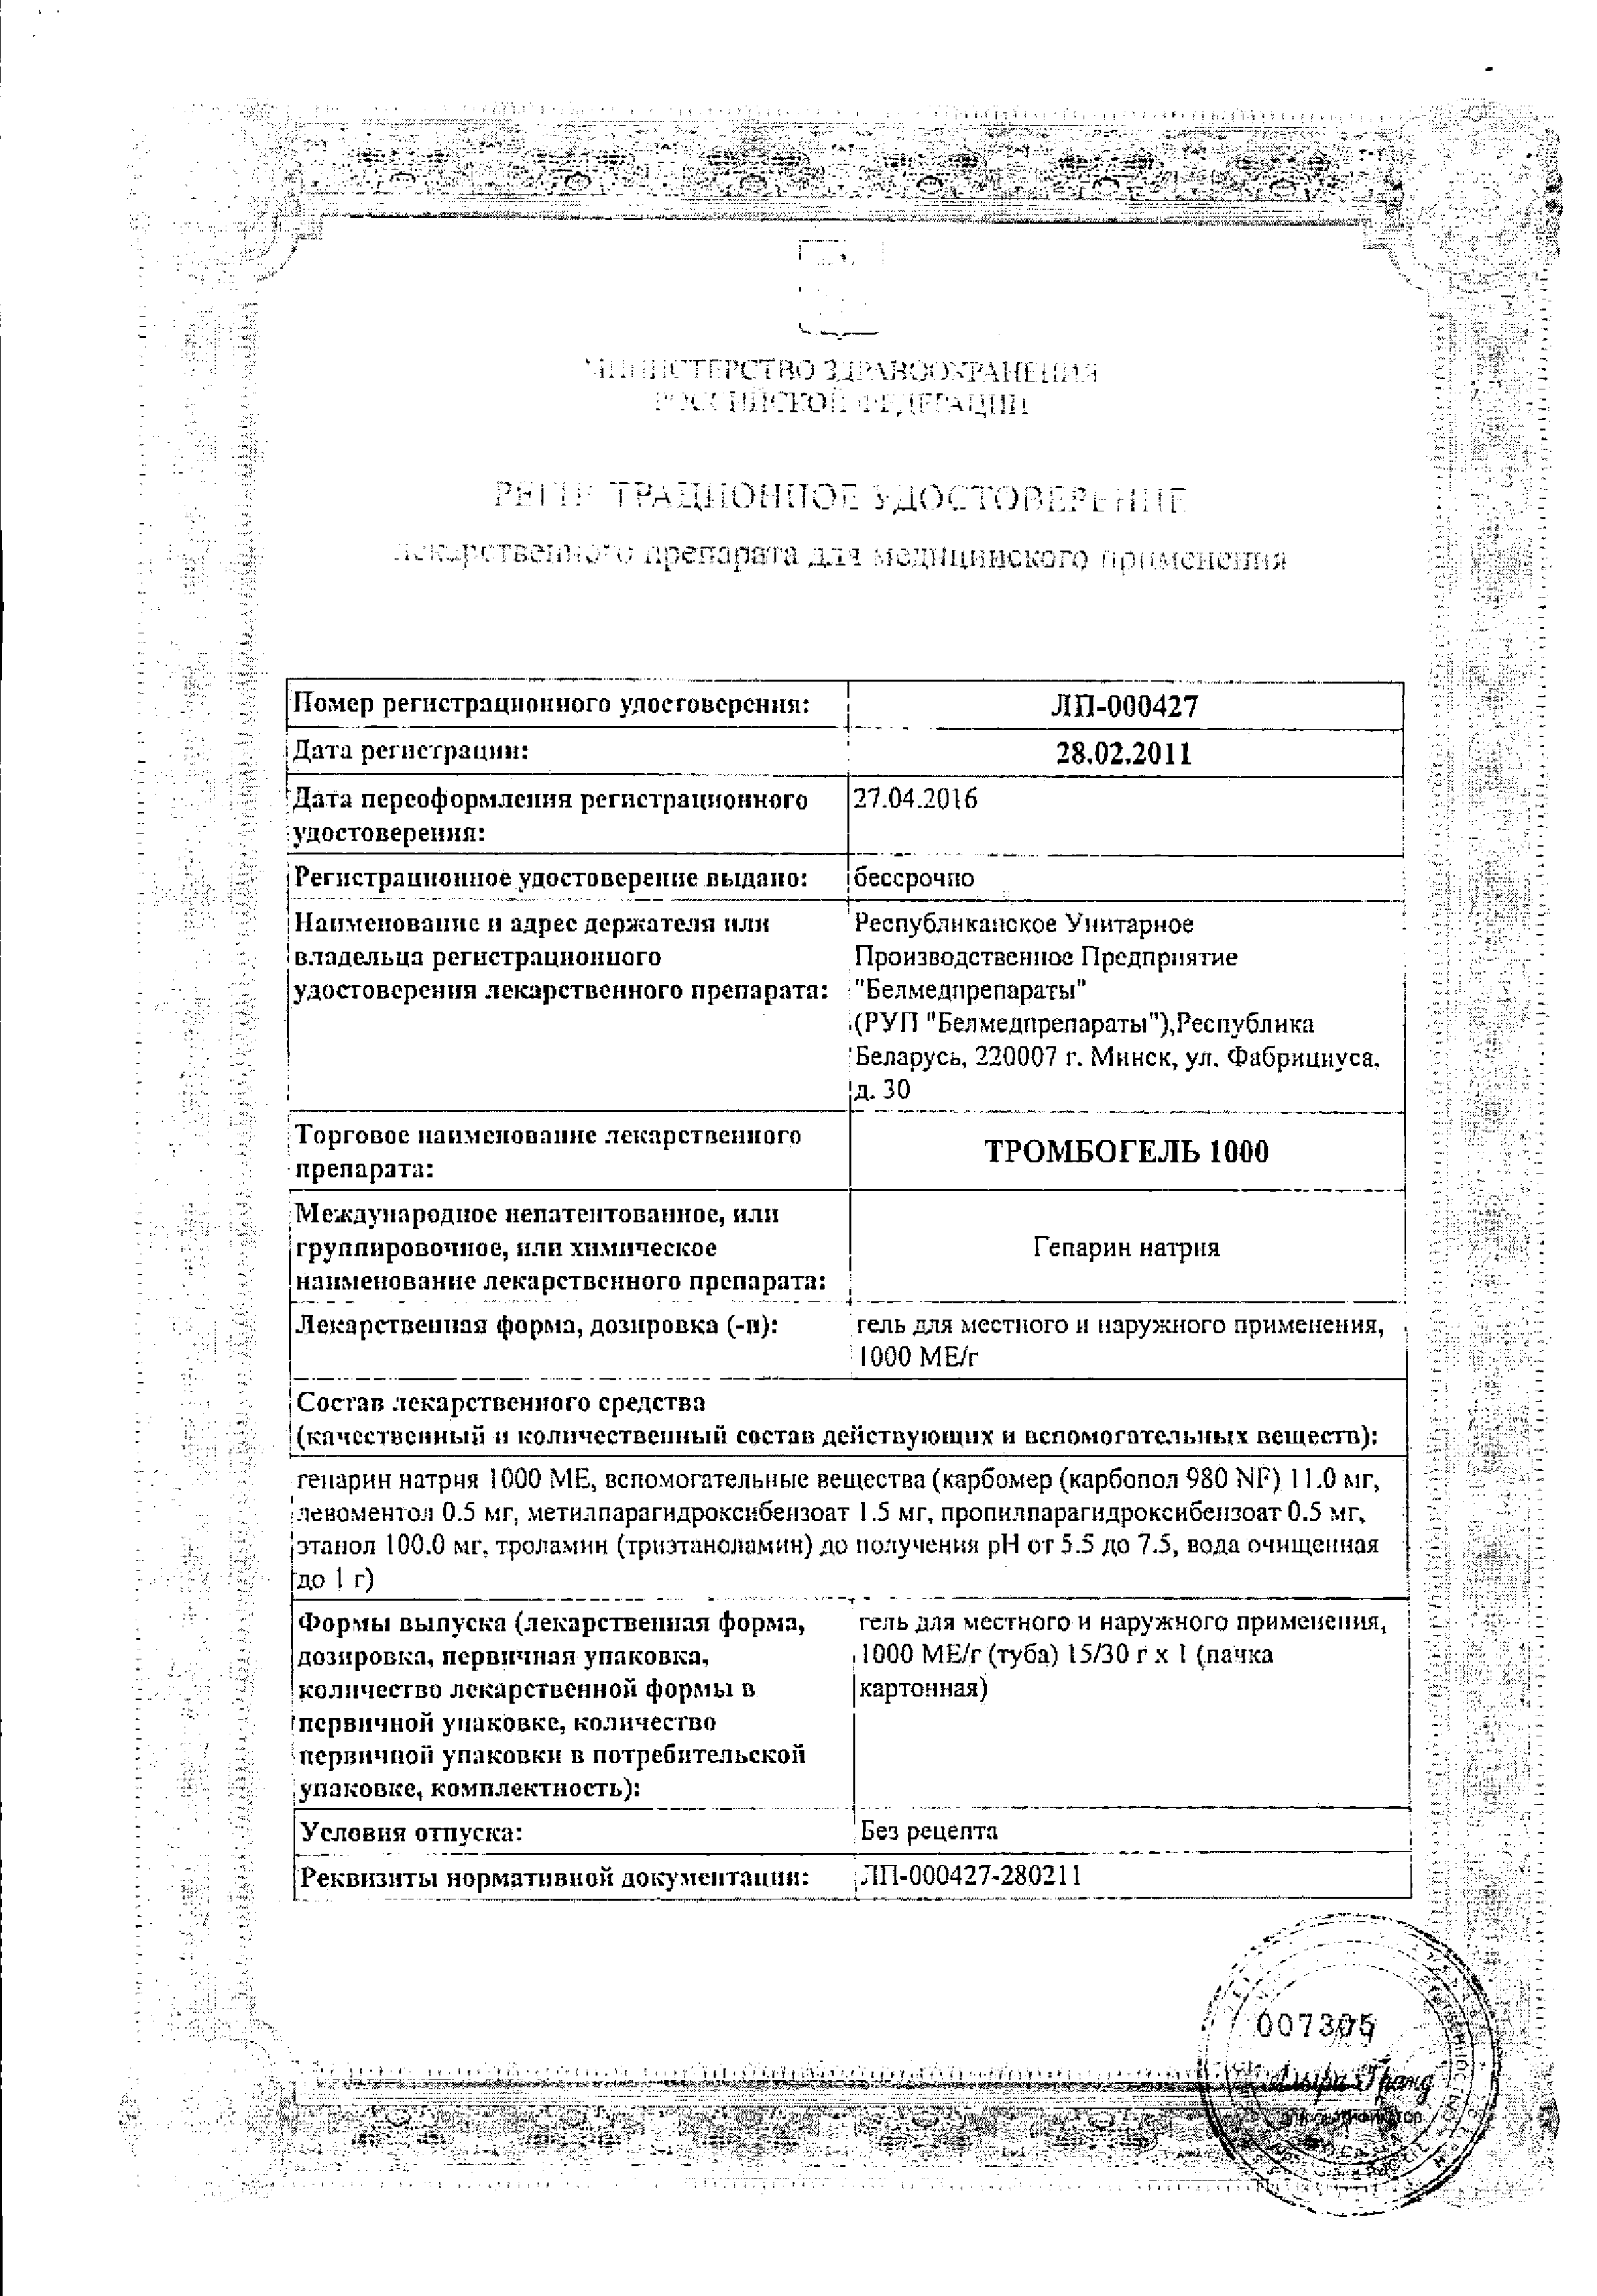 Тромбогель 1000 сертификат